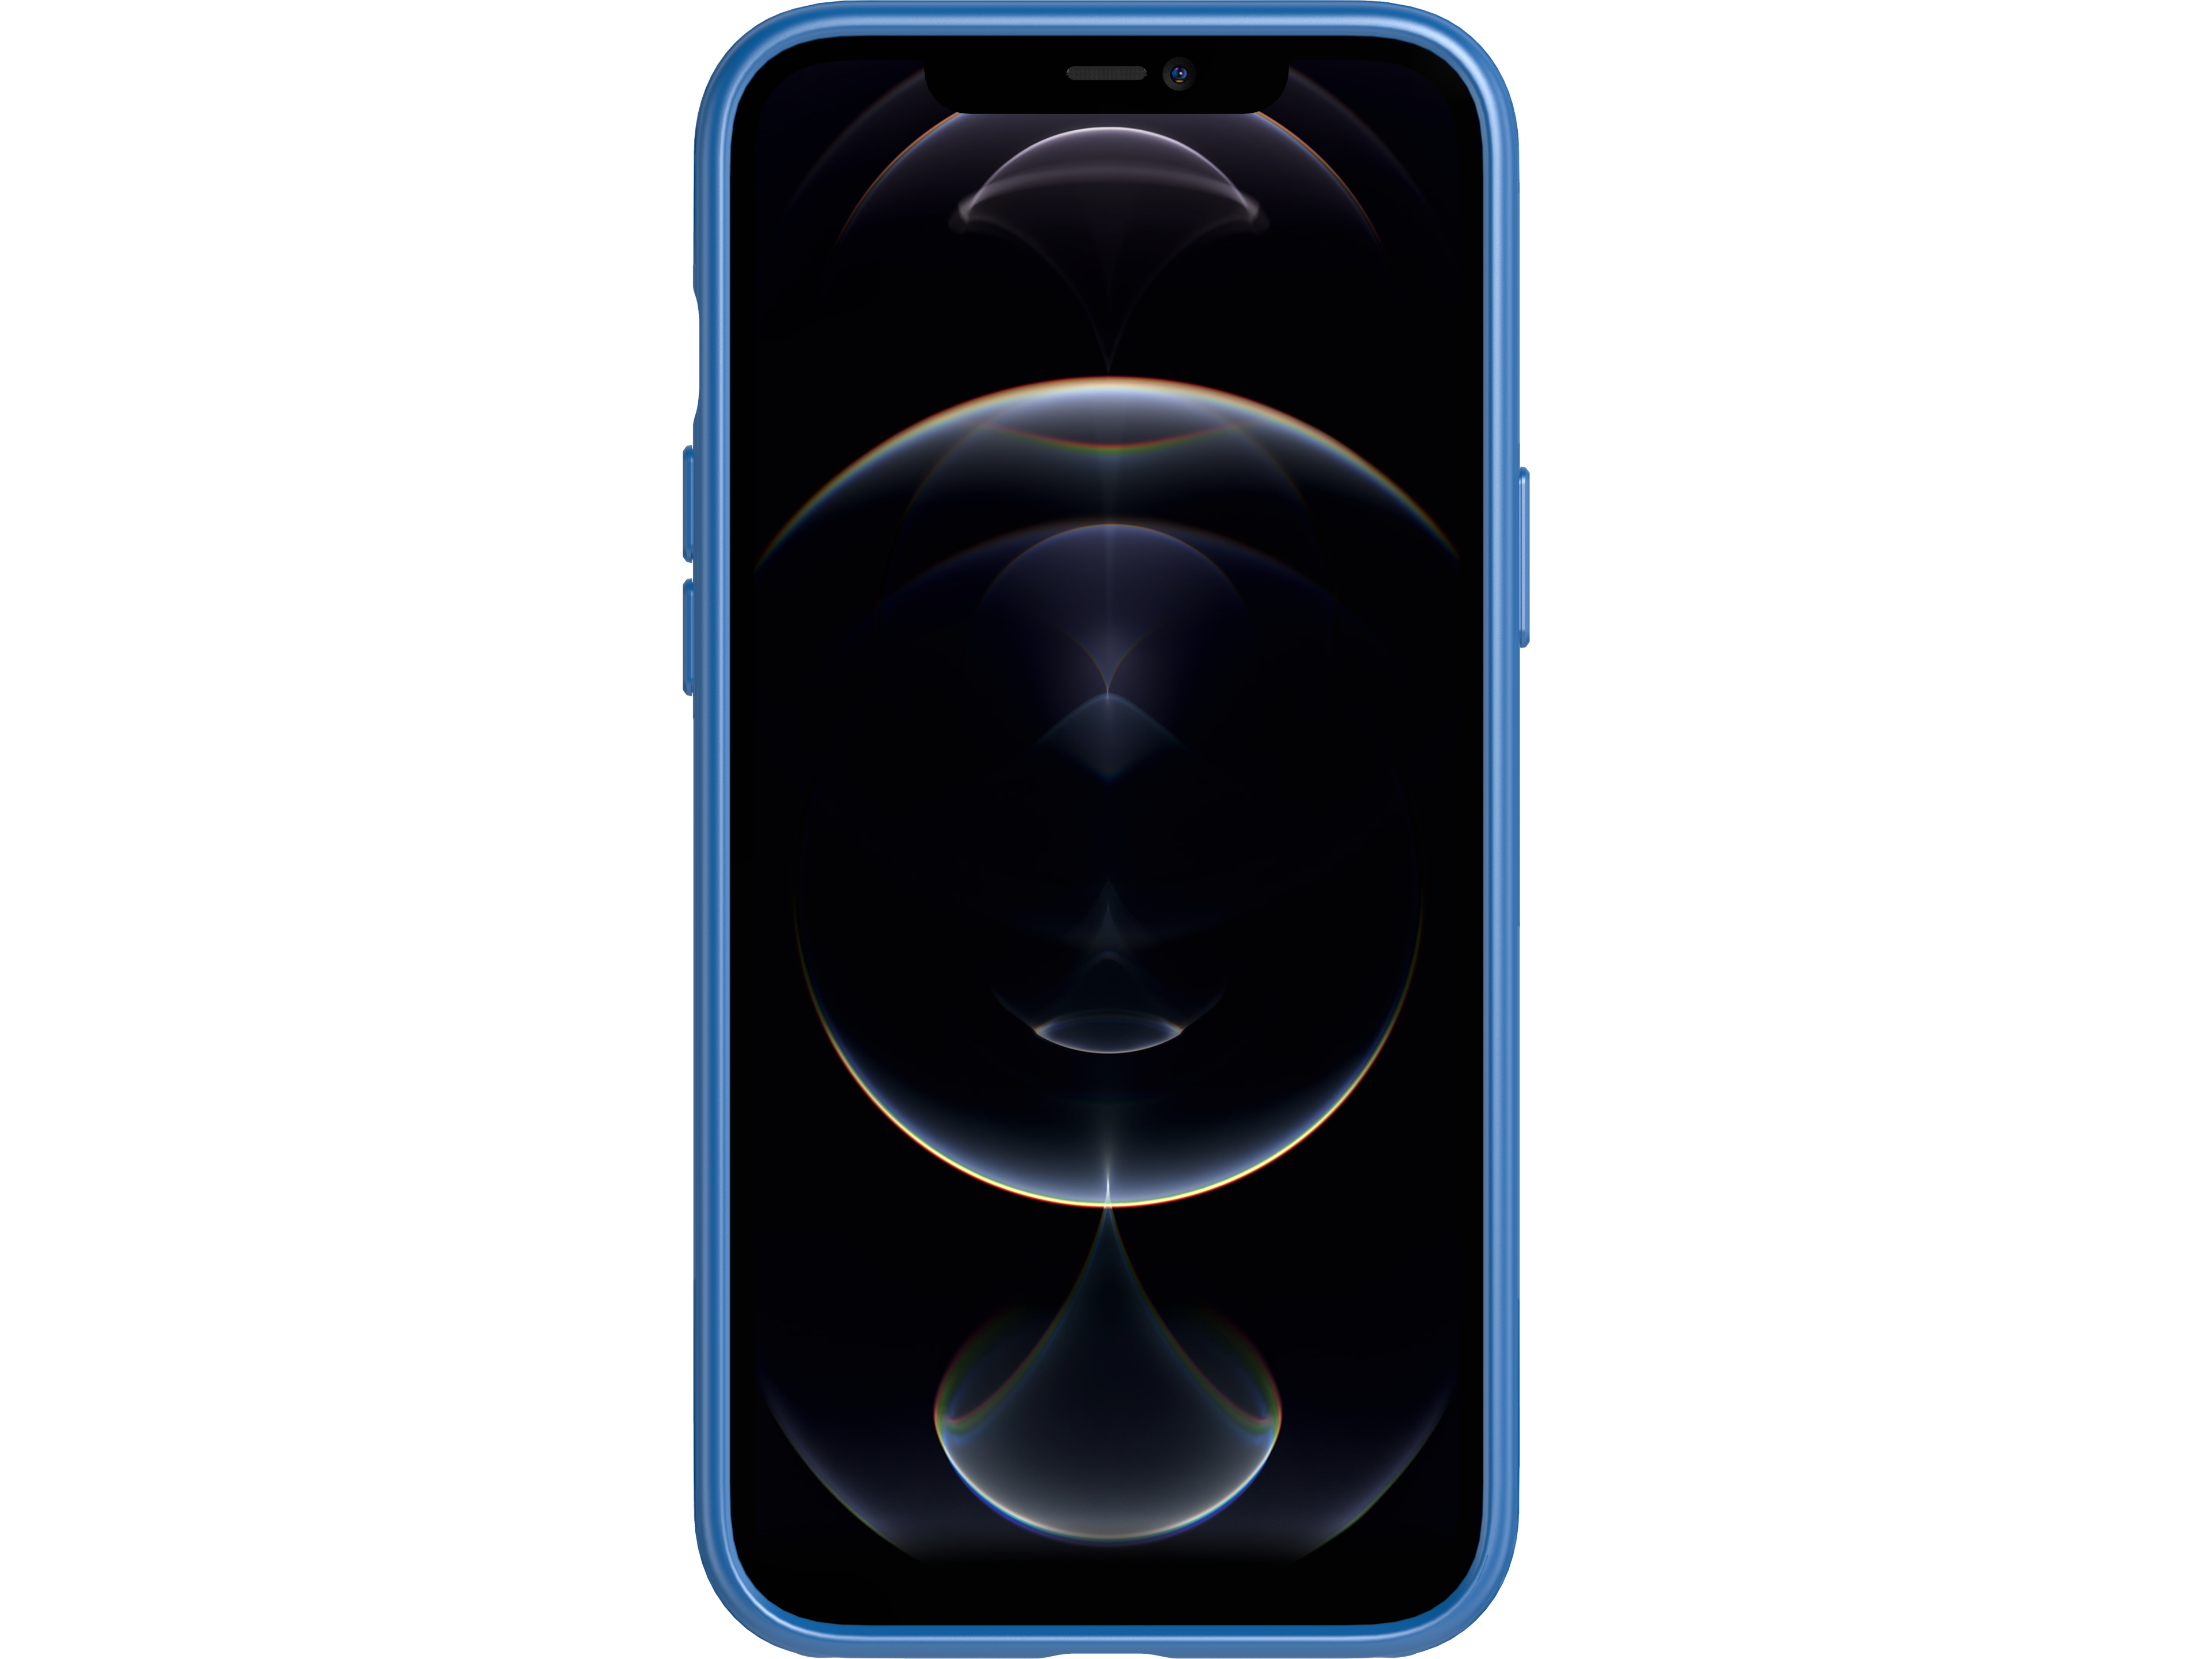 evo-slim-case-iphone-12-pro-max